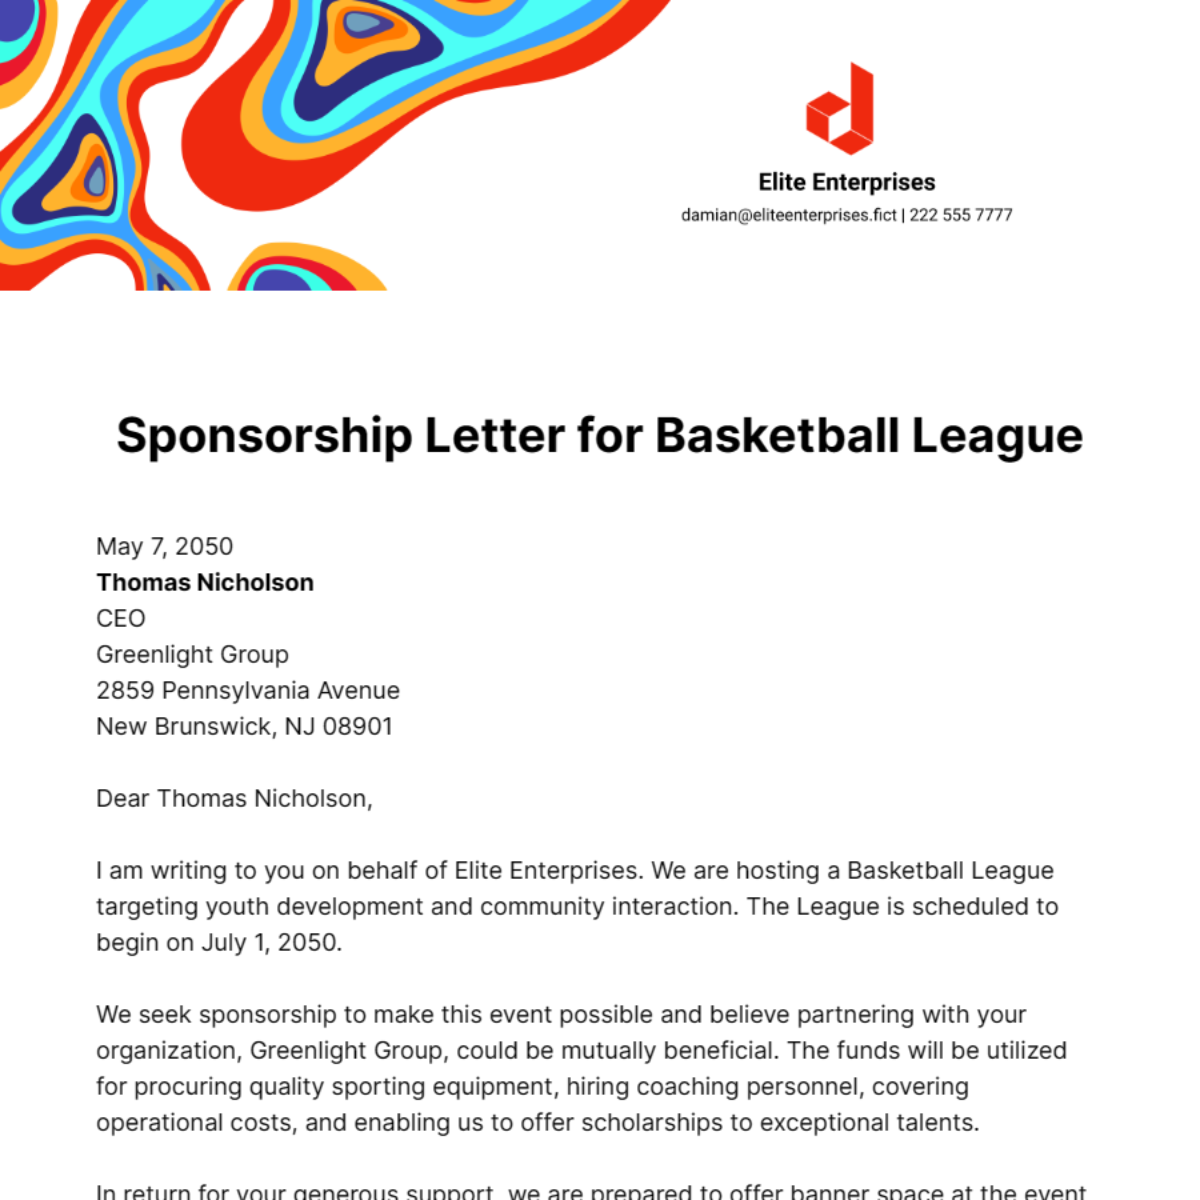 Sponsorship Letter for Basketball League Template